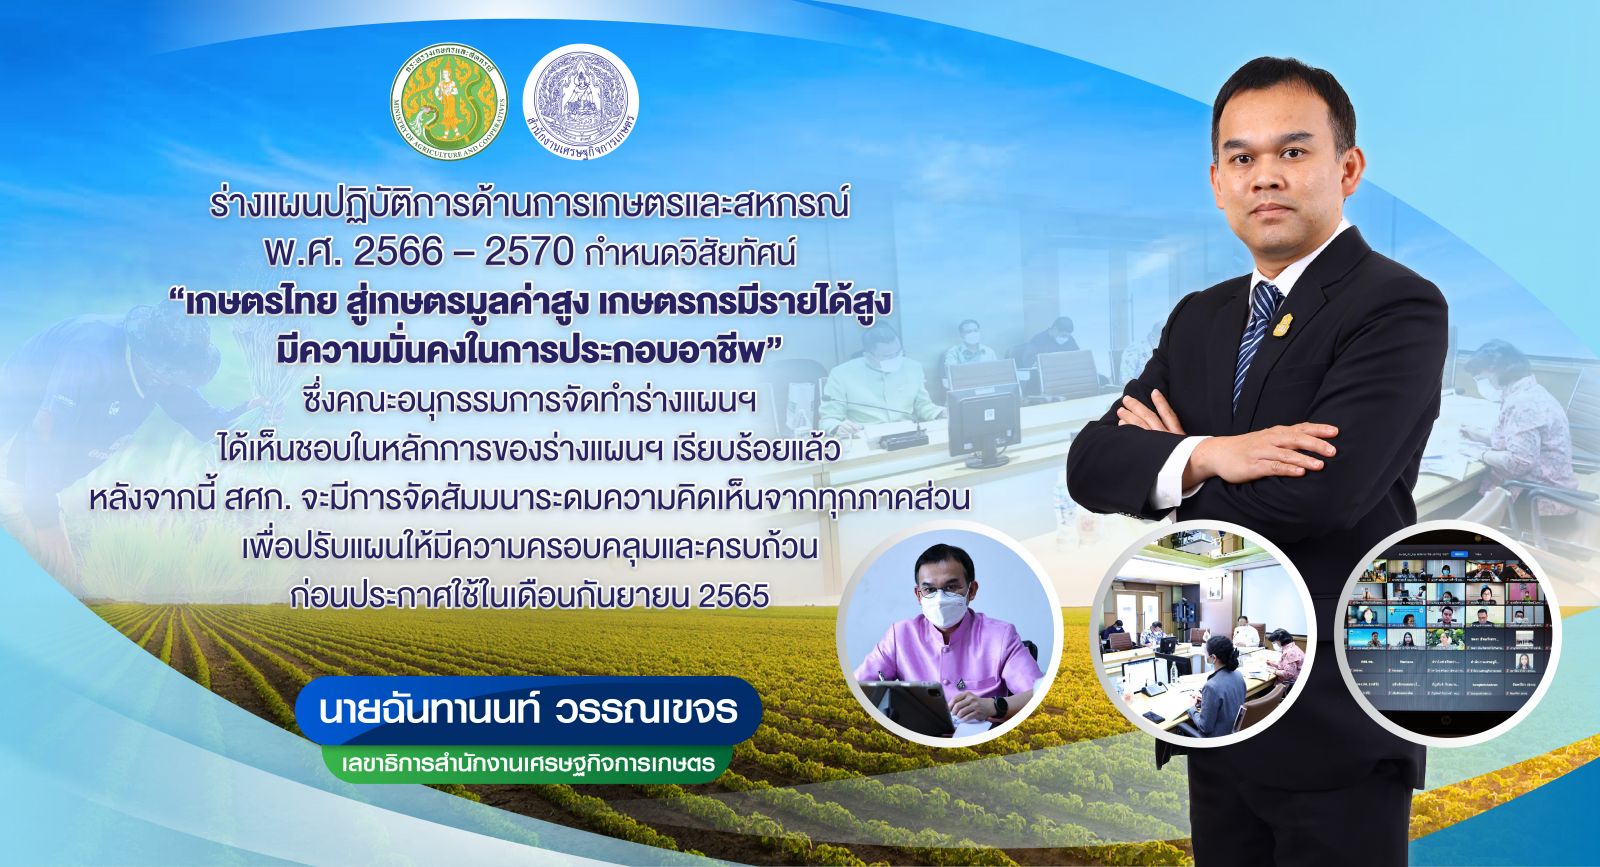 เกษตรฯ เร่งแผนปฏิบัติการฯ ระยะ 5 ปี  ดันภาคเกษตรไทยสู่เกษตรมูลค่าสูง เกษตรกรมั่นคงในอาชีพ